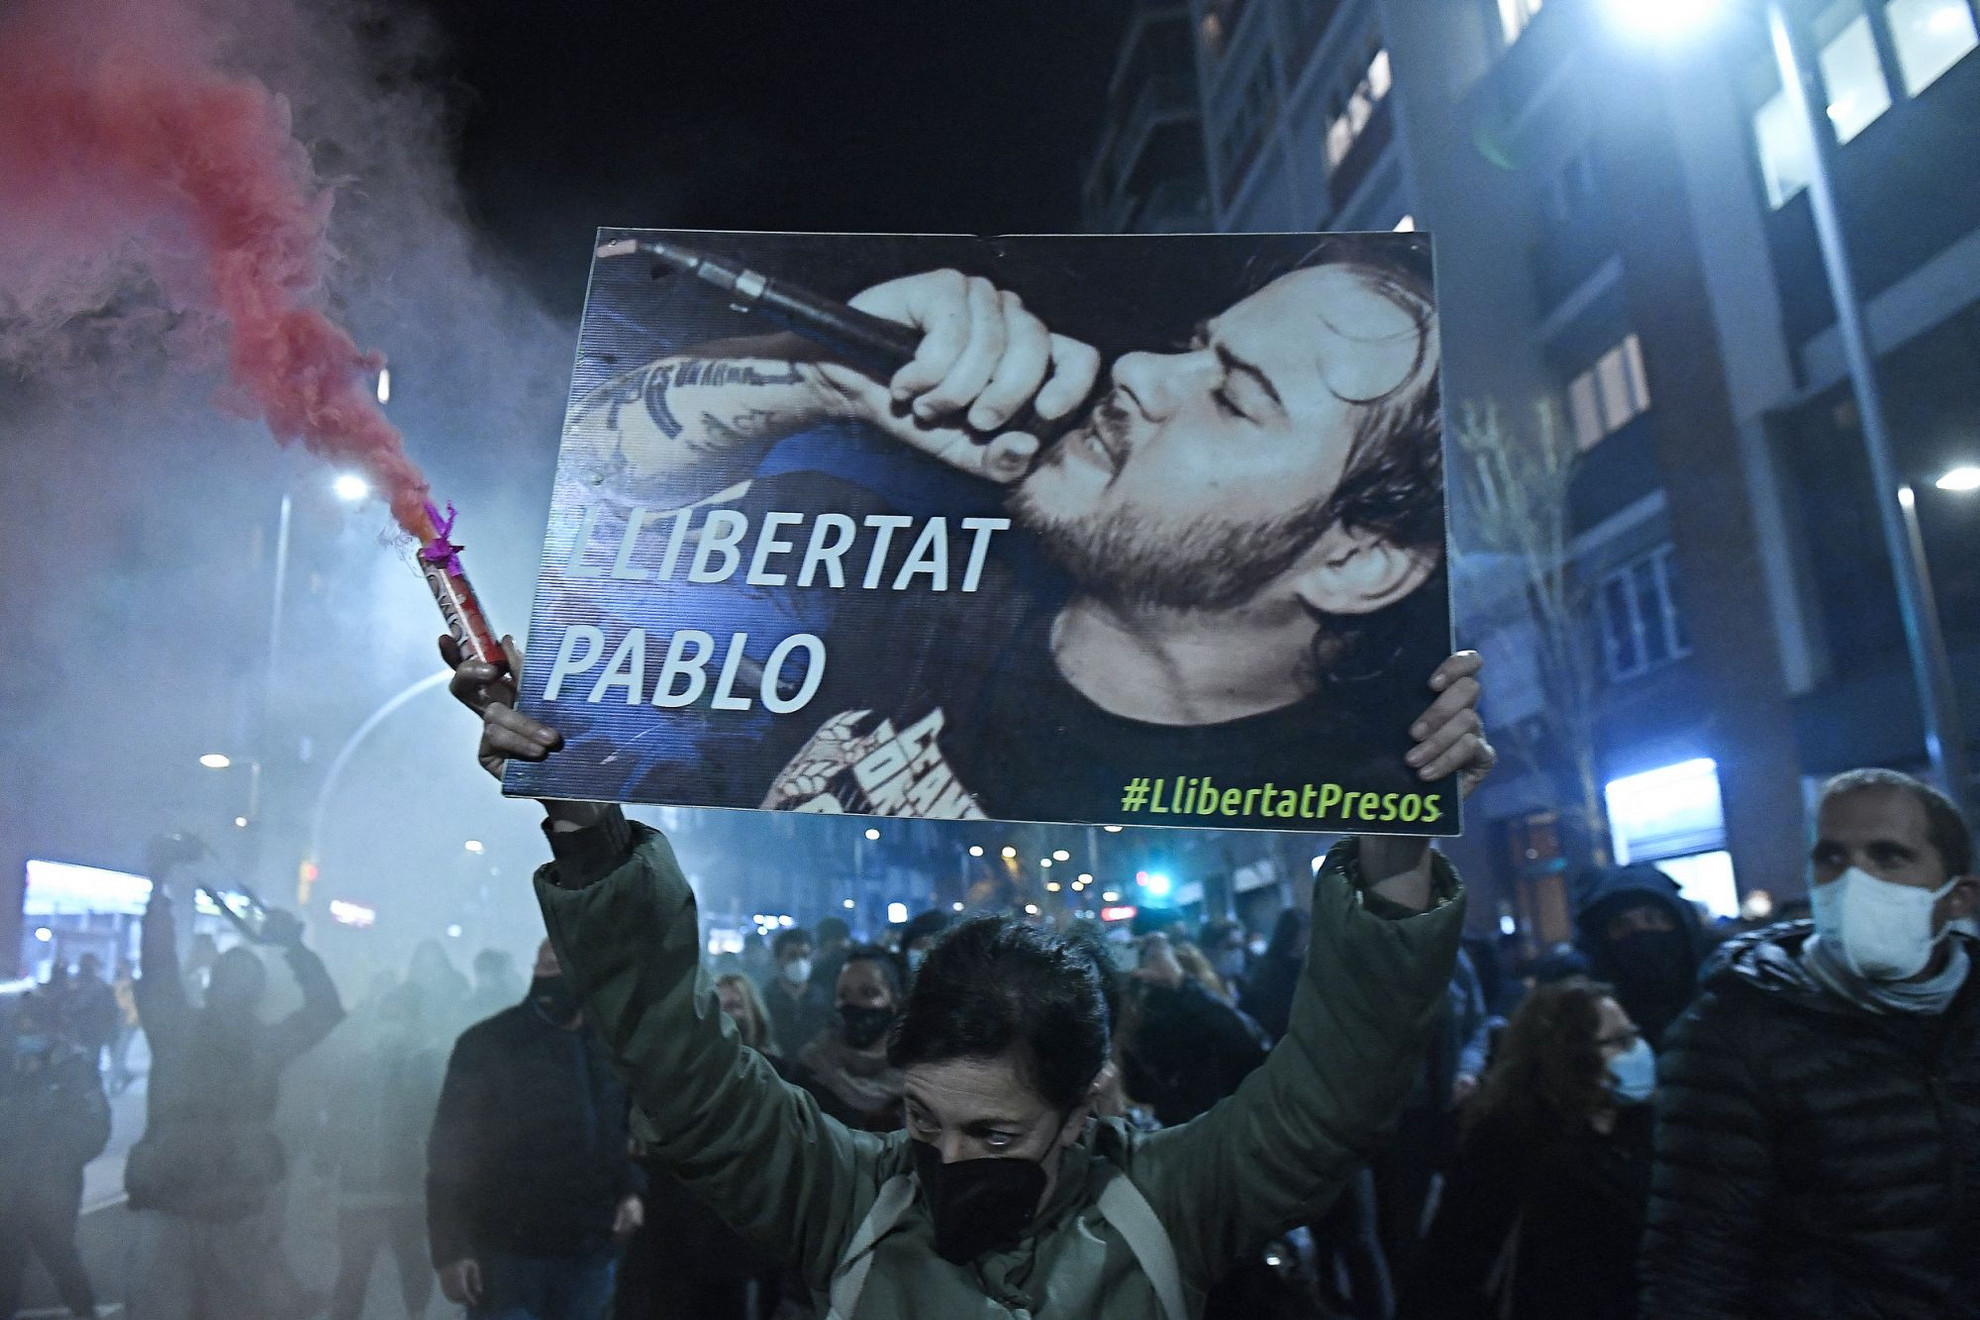 Az erősen baloldali retorikájú Hasél letartóztatása fokozta az ellentétet Katalónia és Madrid közt